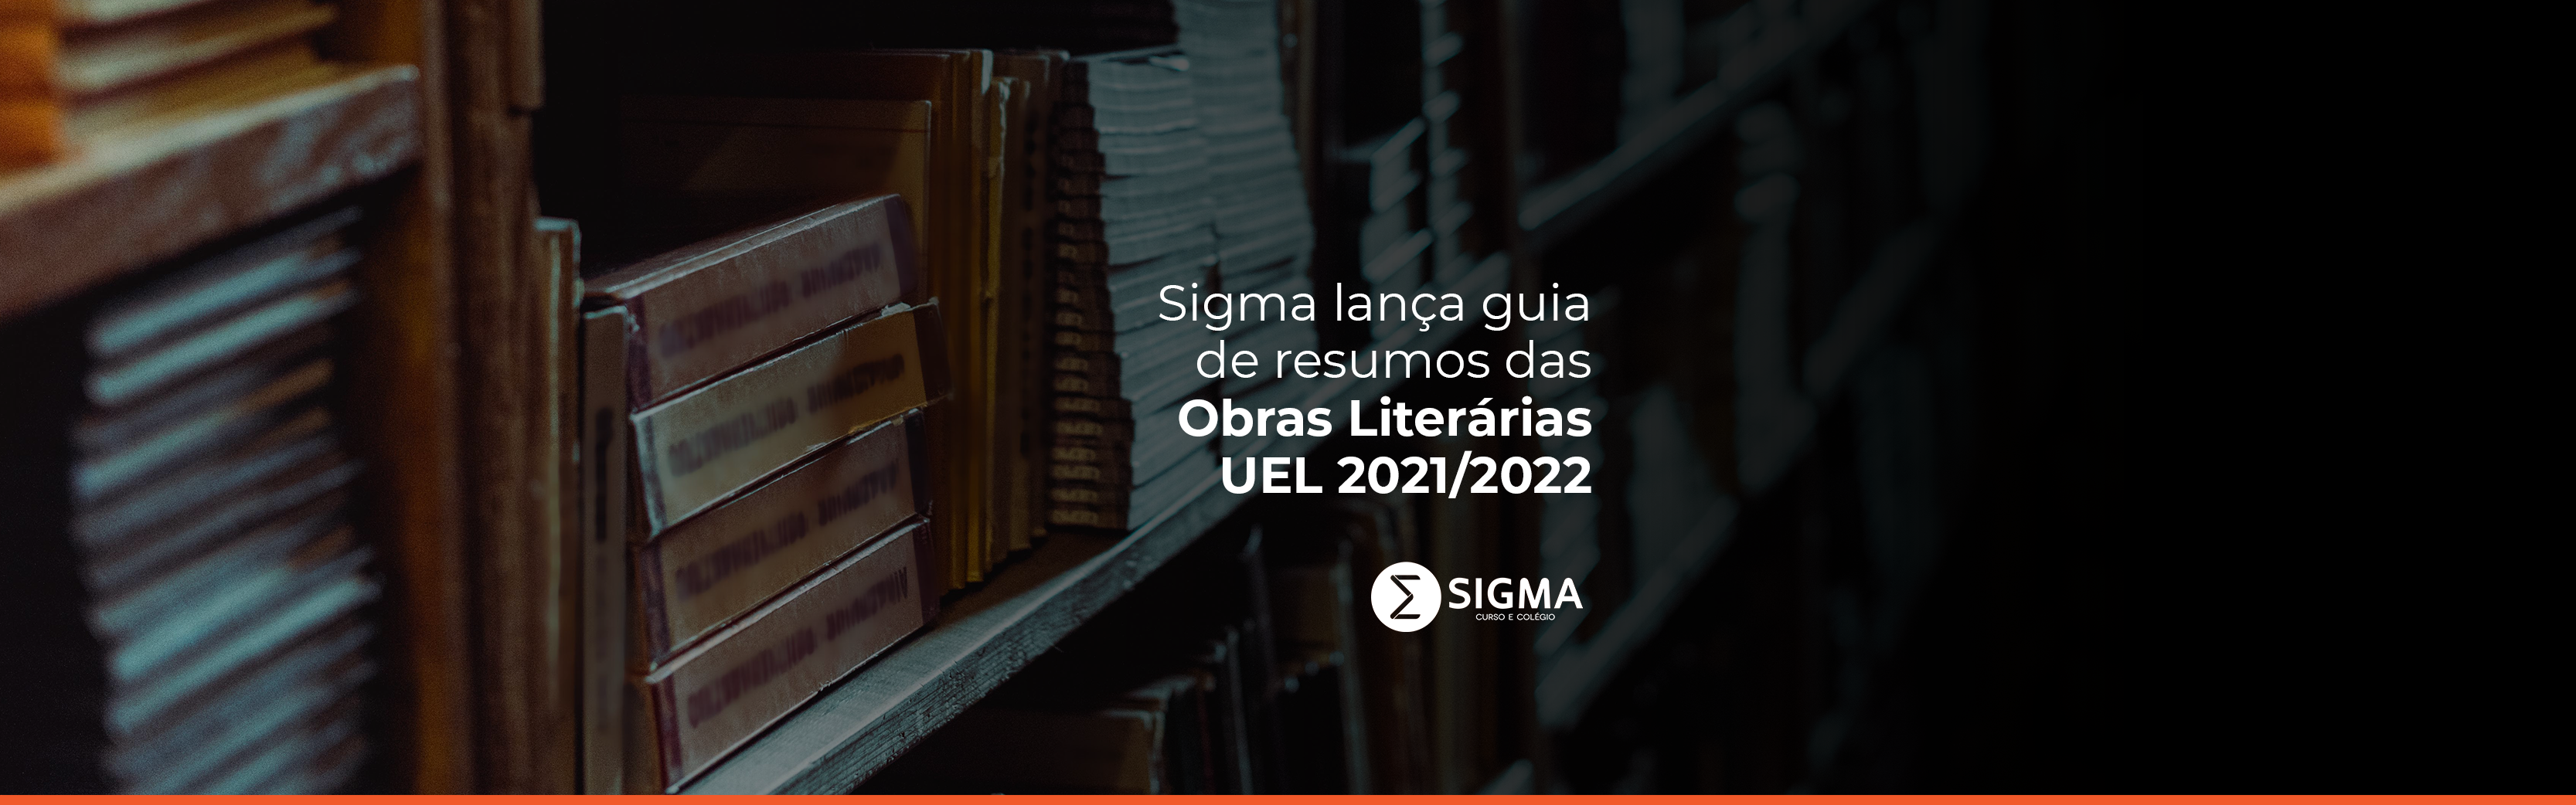 Sigma lança guia de resumos das Obras Literárias UEL 2021/2022